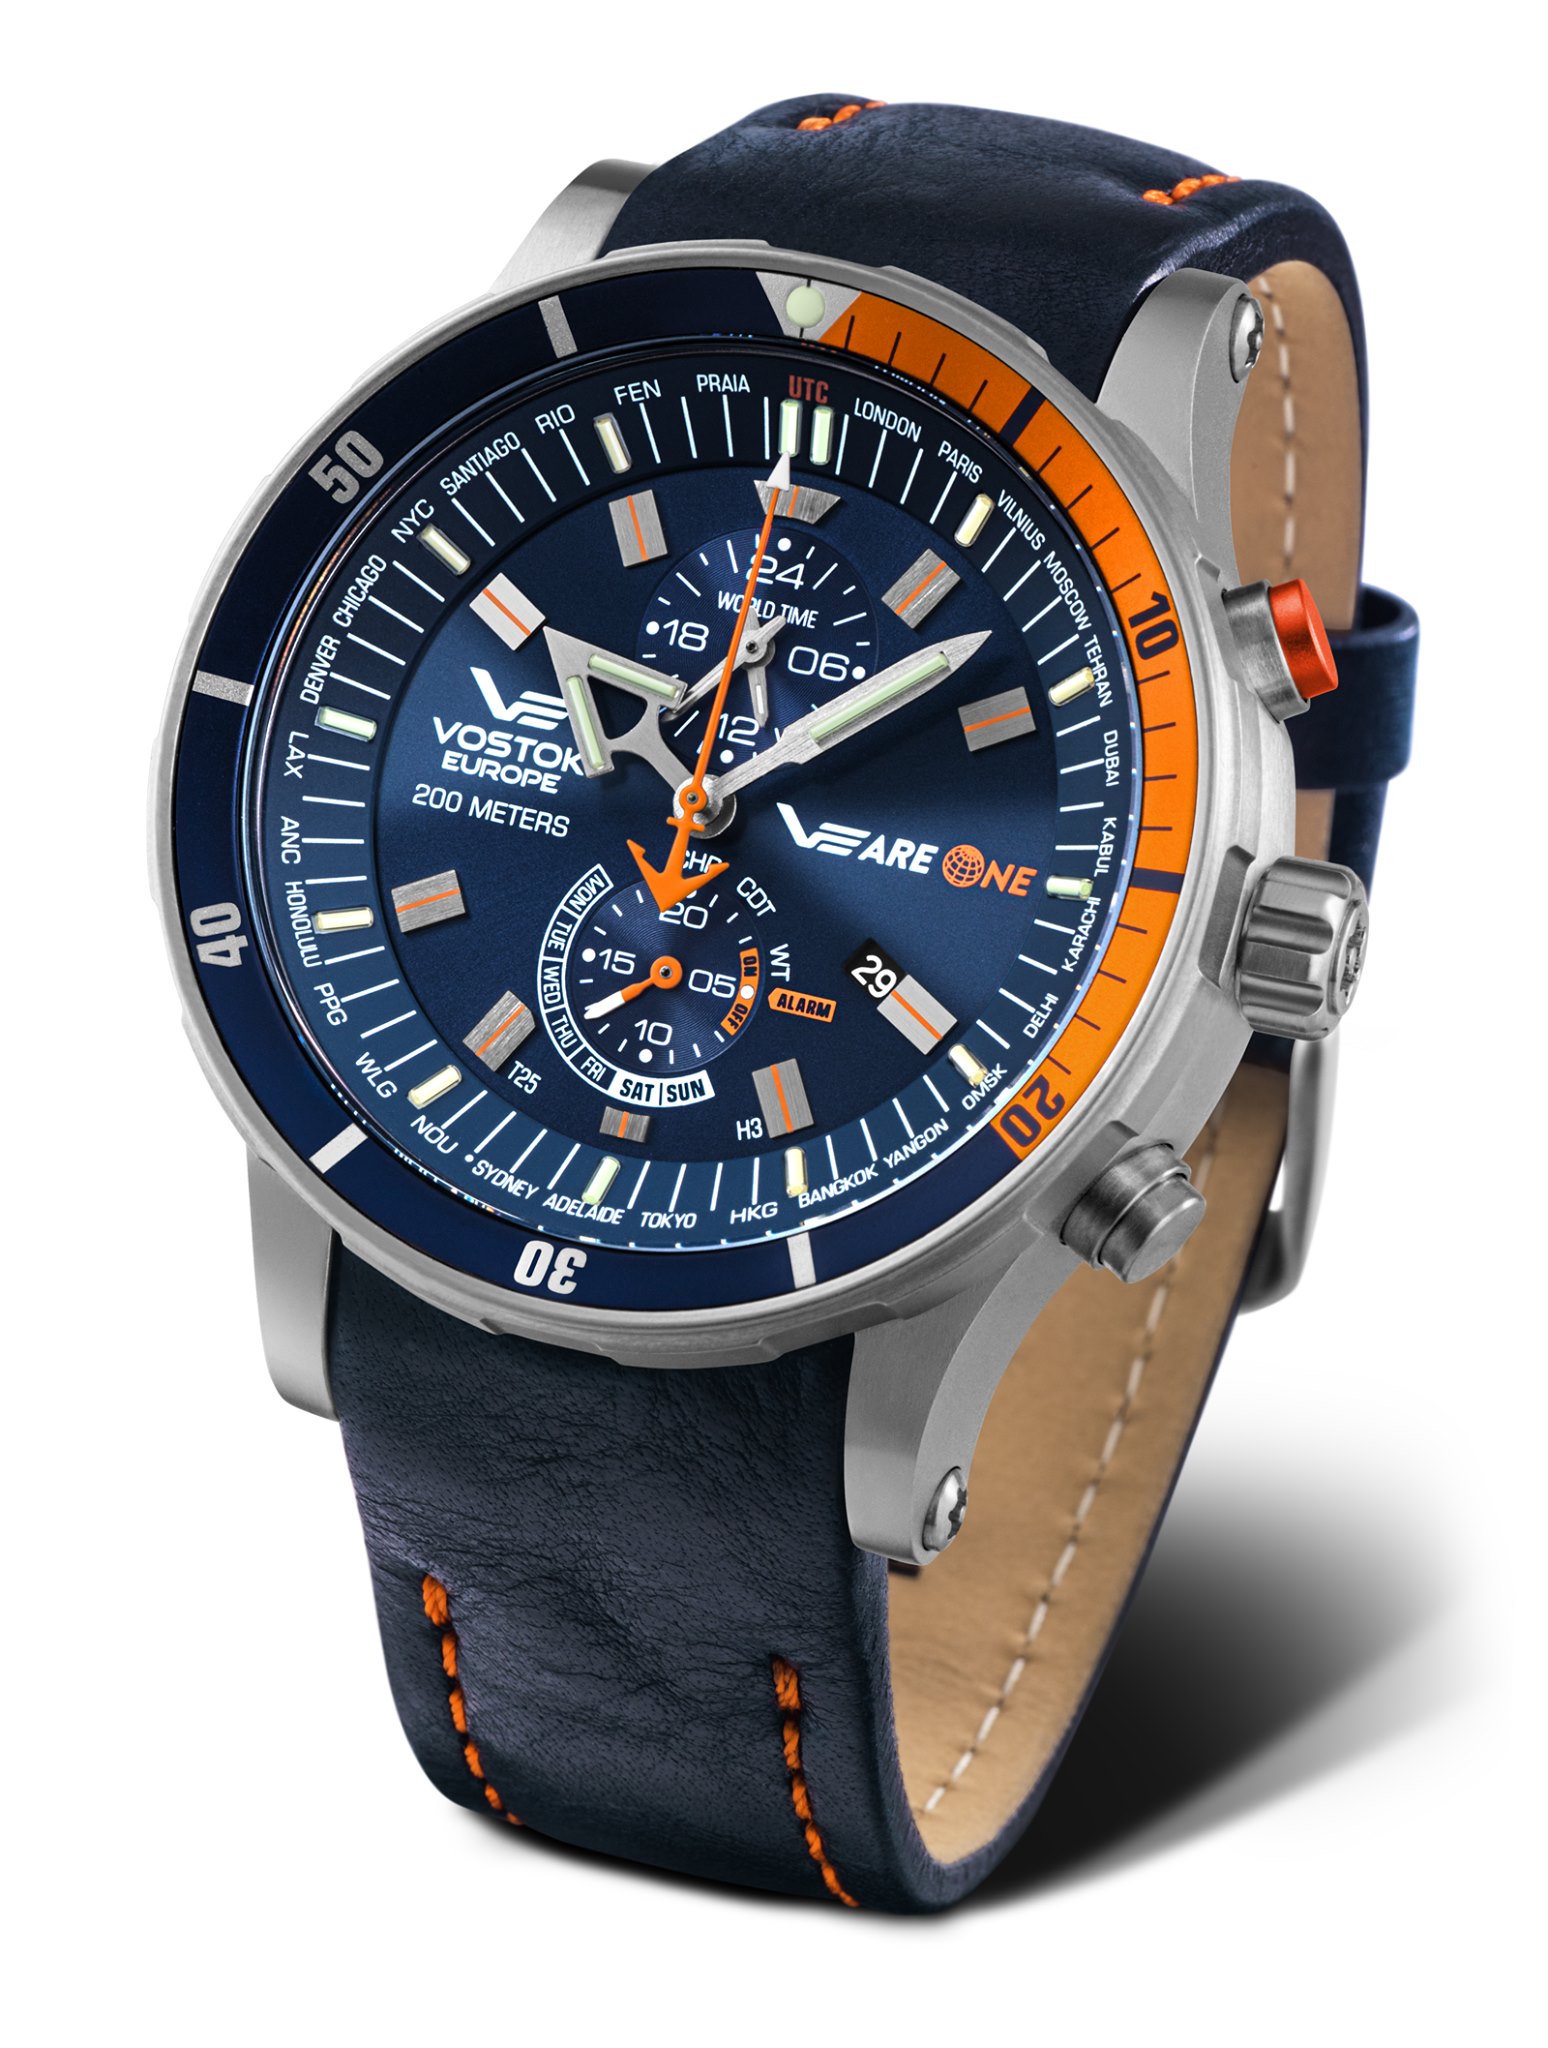 コロナに負けるな Vostok Europeから 最強の腕時計を作ろう Veareone プロジェクトの限定モデルがついに完成 株式会社andorosのプレスリリース